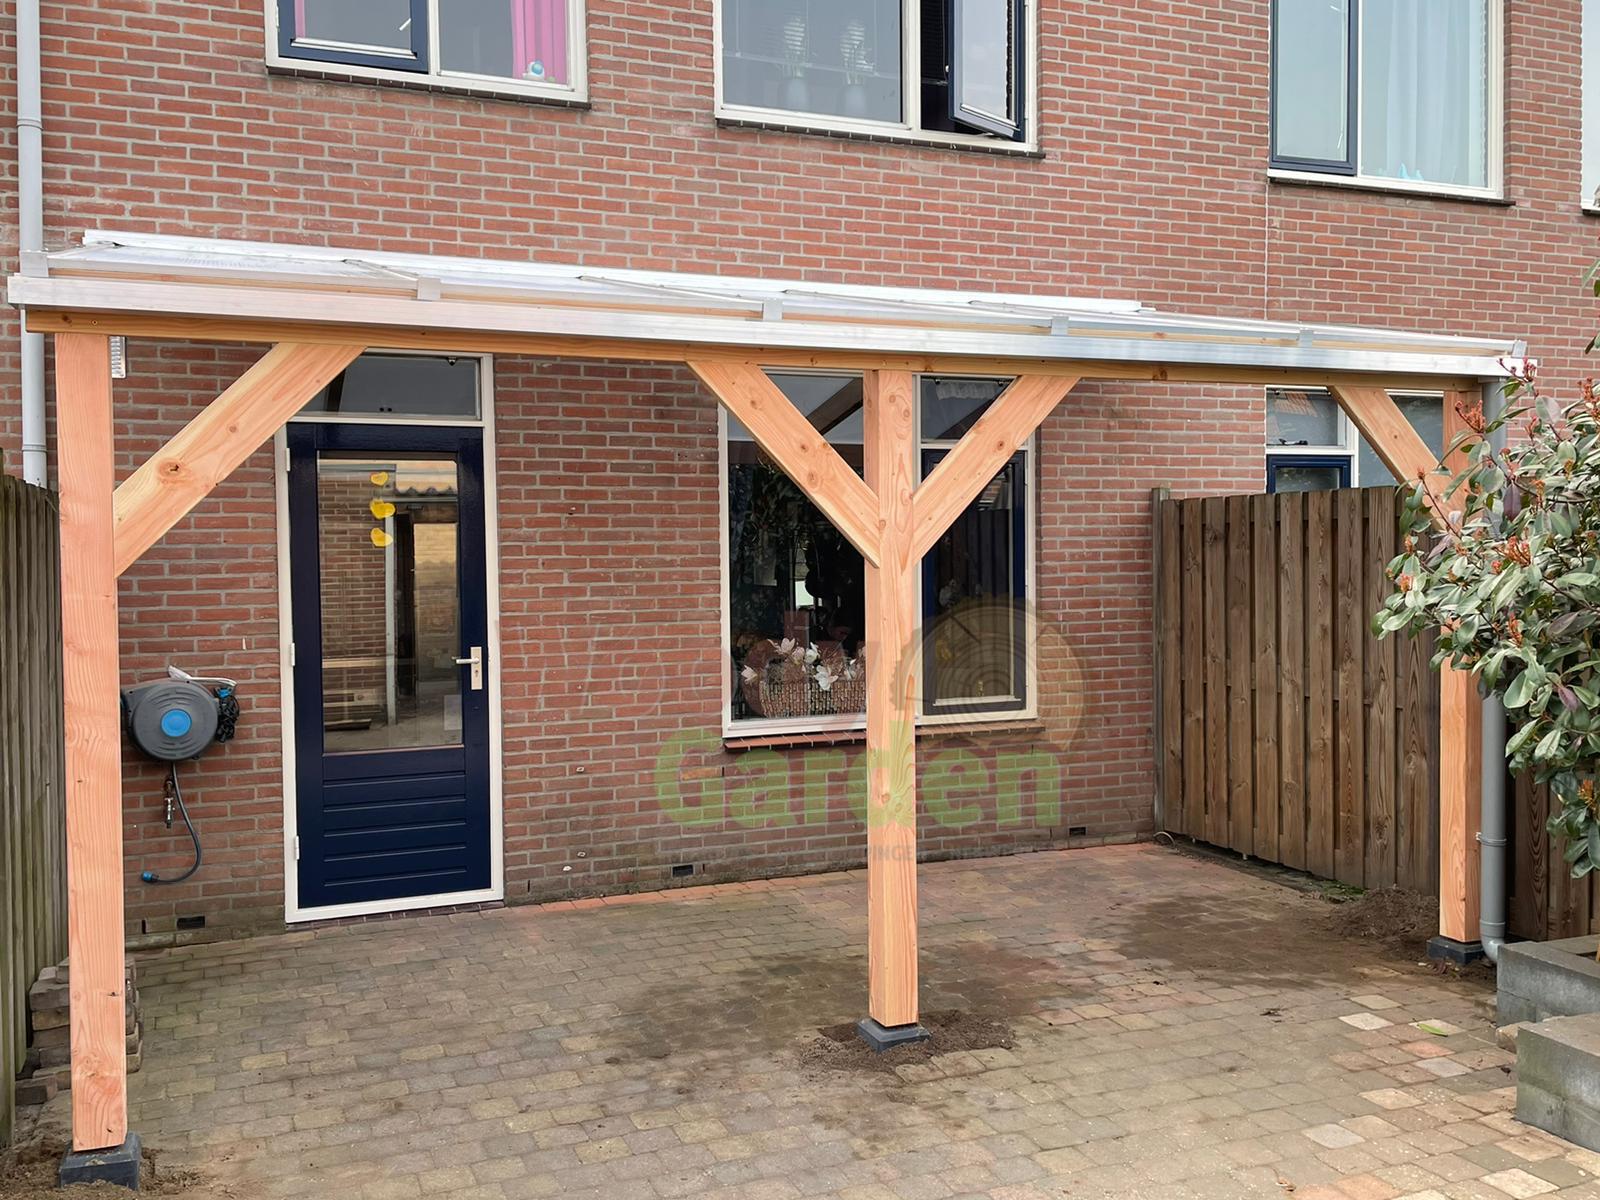 Douglas houten veranda met polycarbonaat bovenbouwsysteem